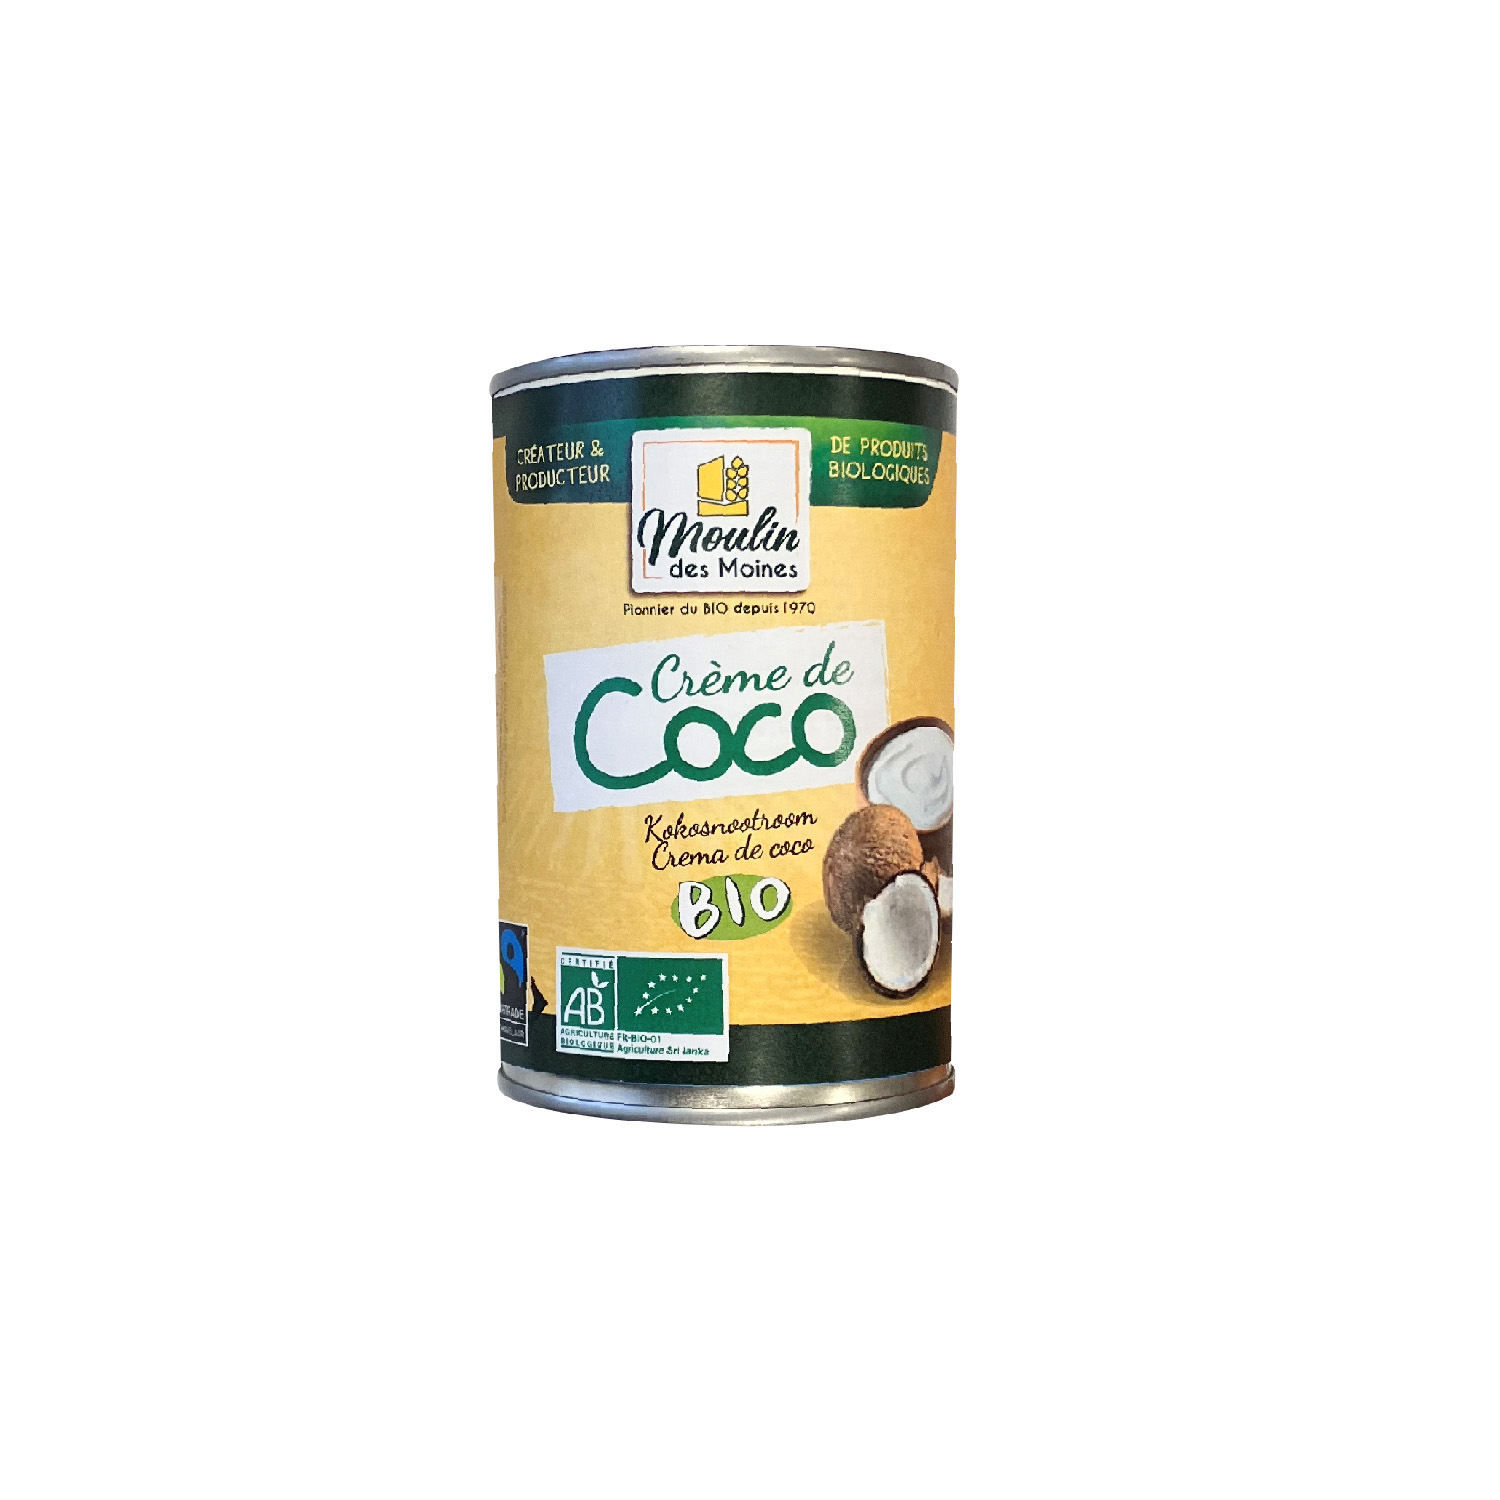 Crème de coco